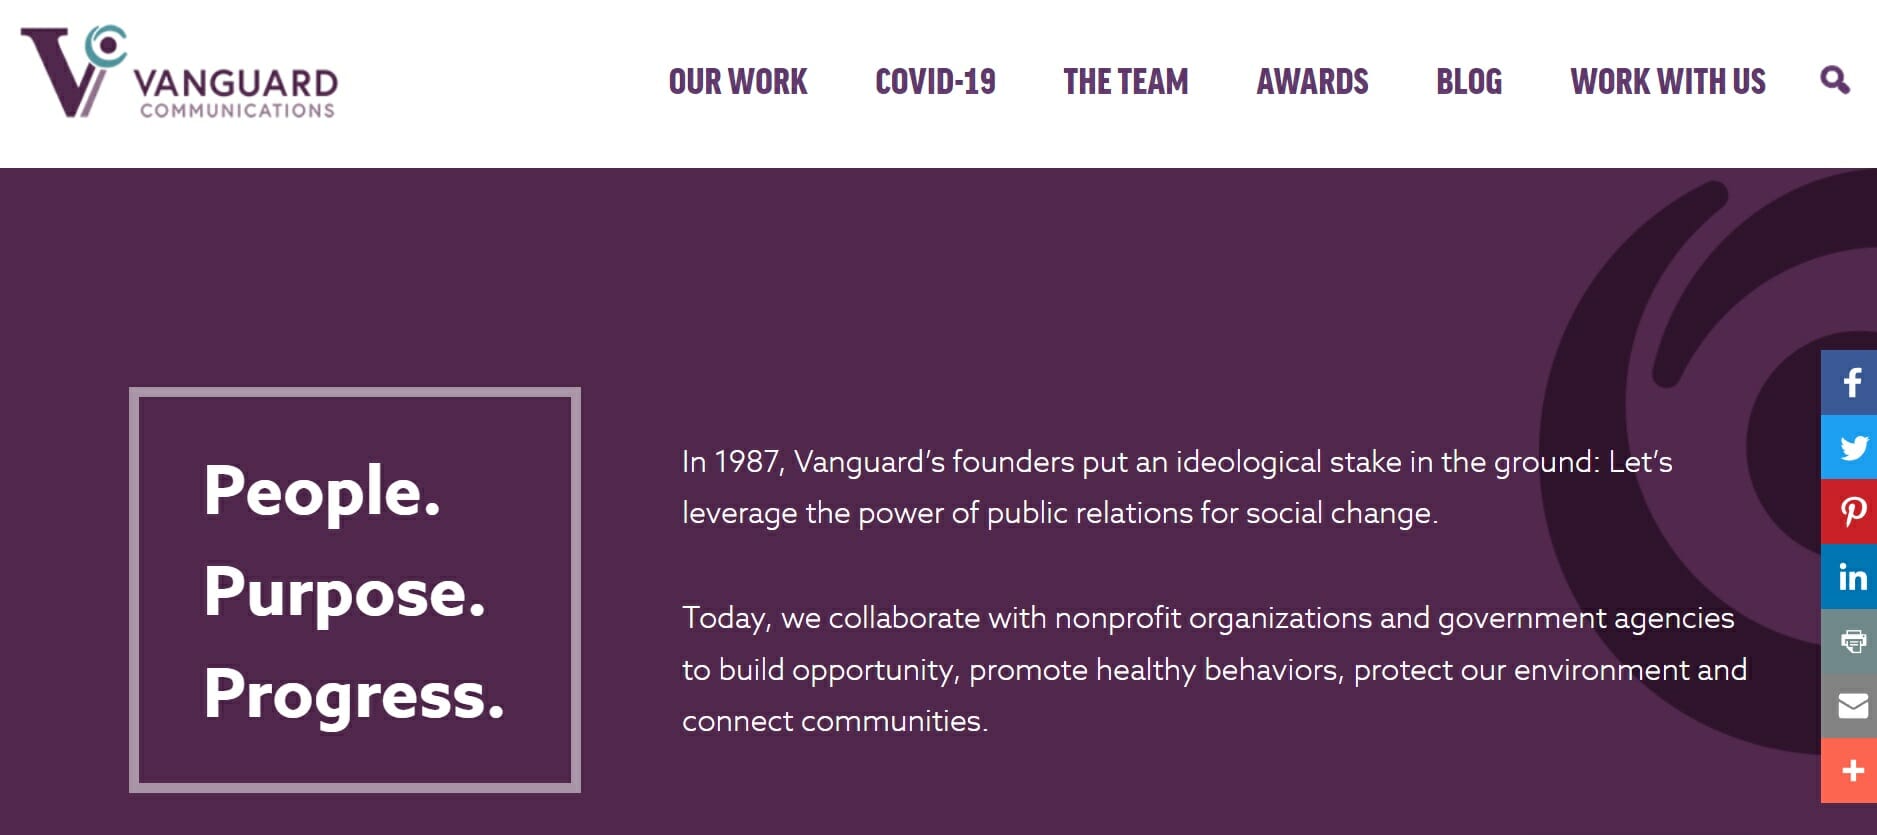 Vanguard Communications